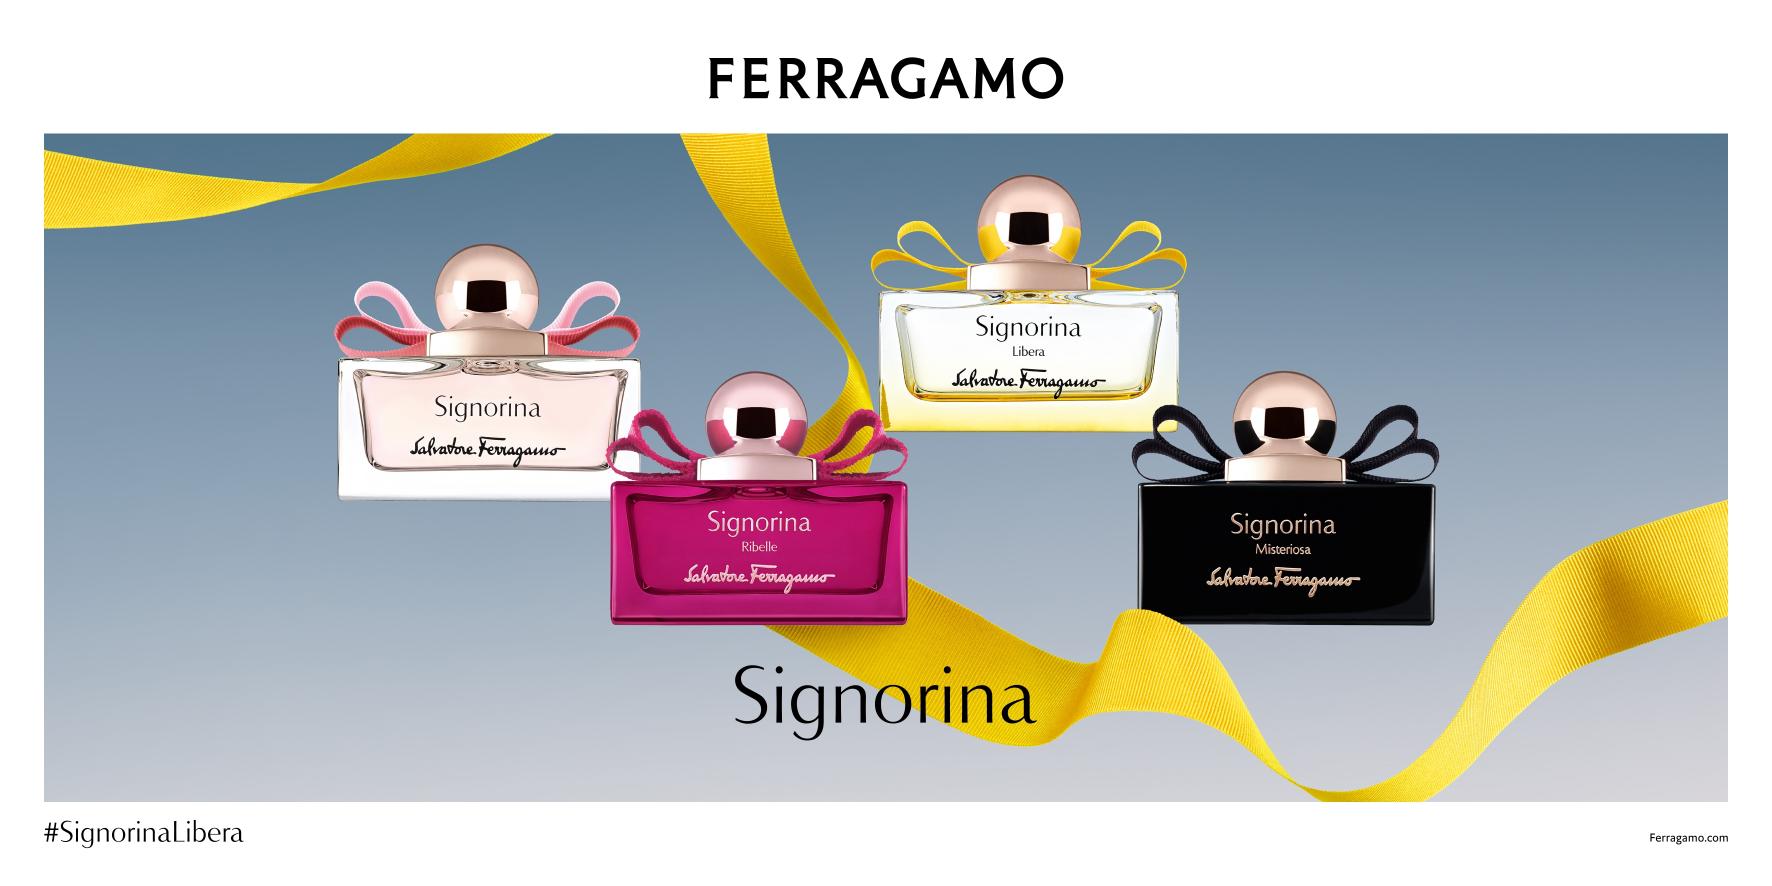 COVER Ferragamo Signorina Collection Ferragamo Signorina Collection   Khúc nhạc hương dành tặng thế hệ phụ nữ hiện đại